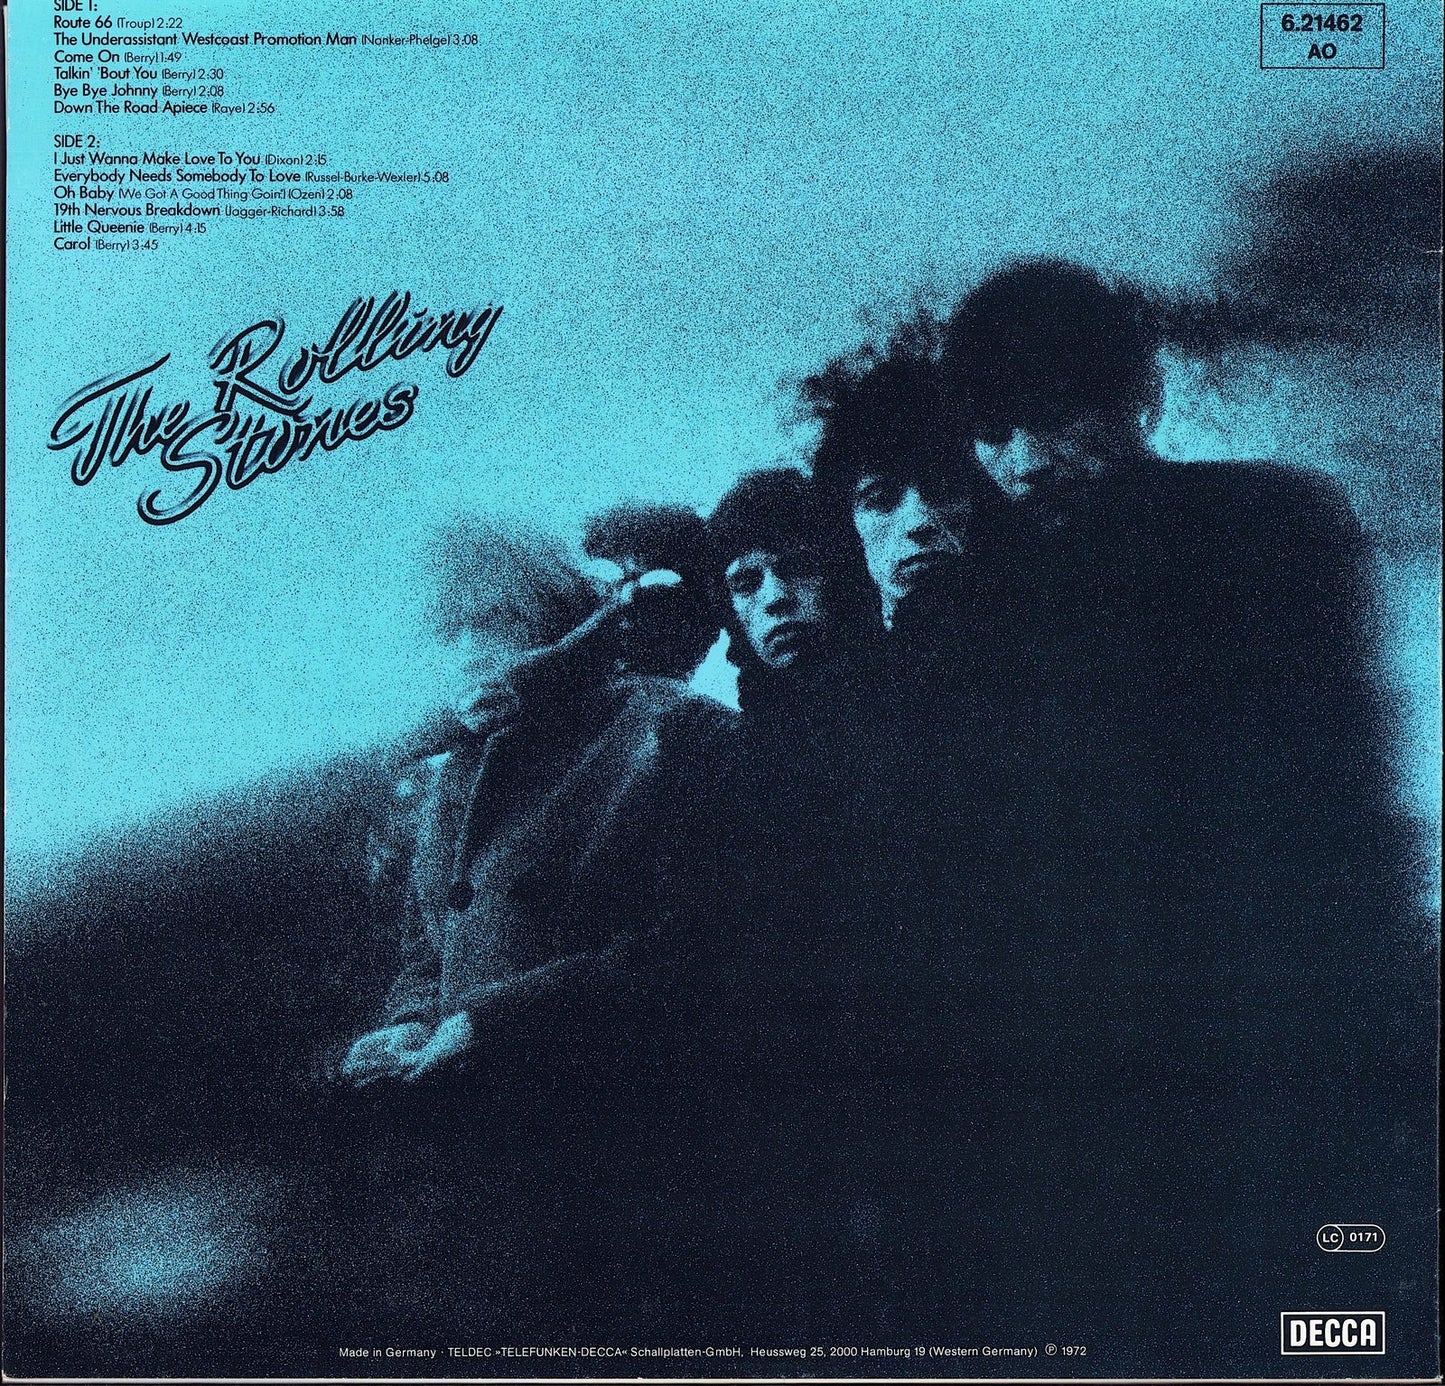 The Rolling Stones - Rock 'N' Rolling Stones Vinyl LP